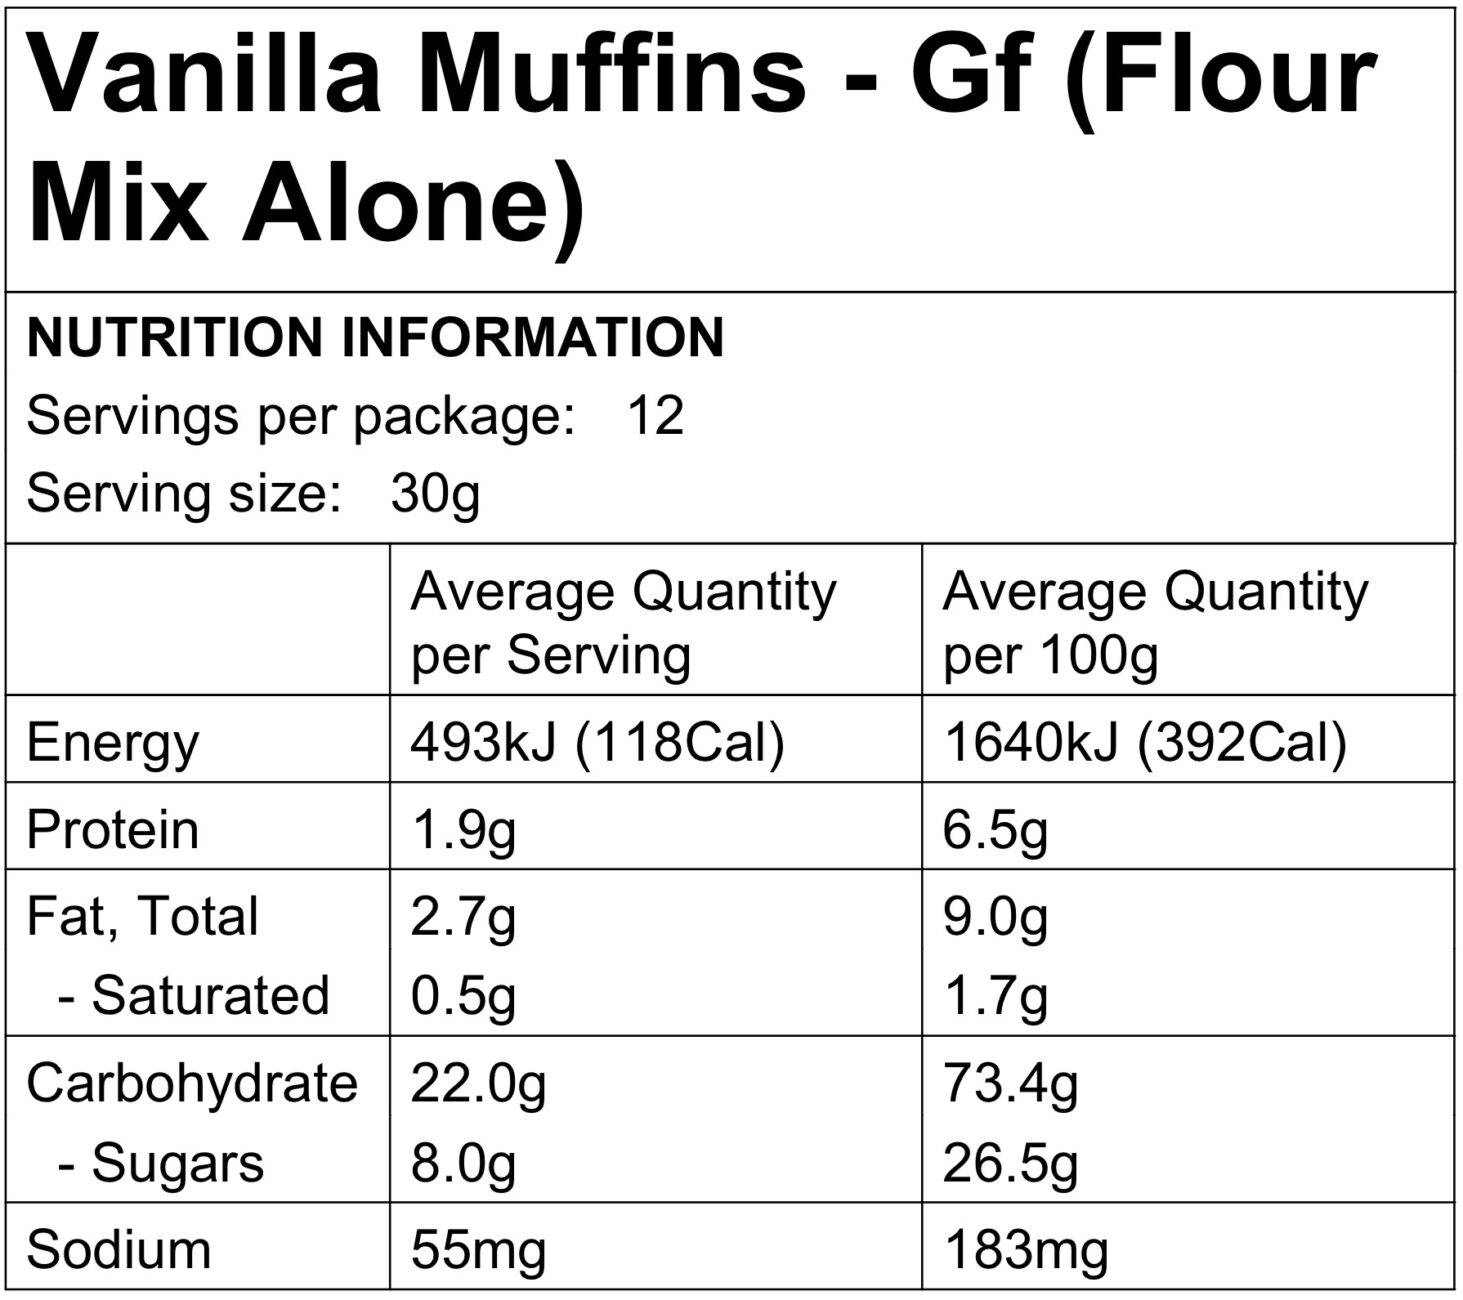 Food to Nourish Vanilla Muffin Mix 360g